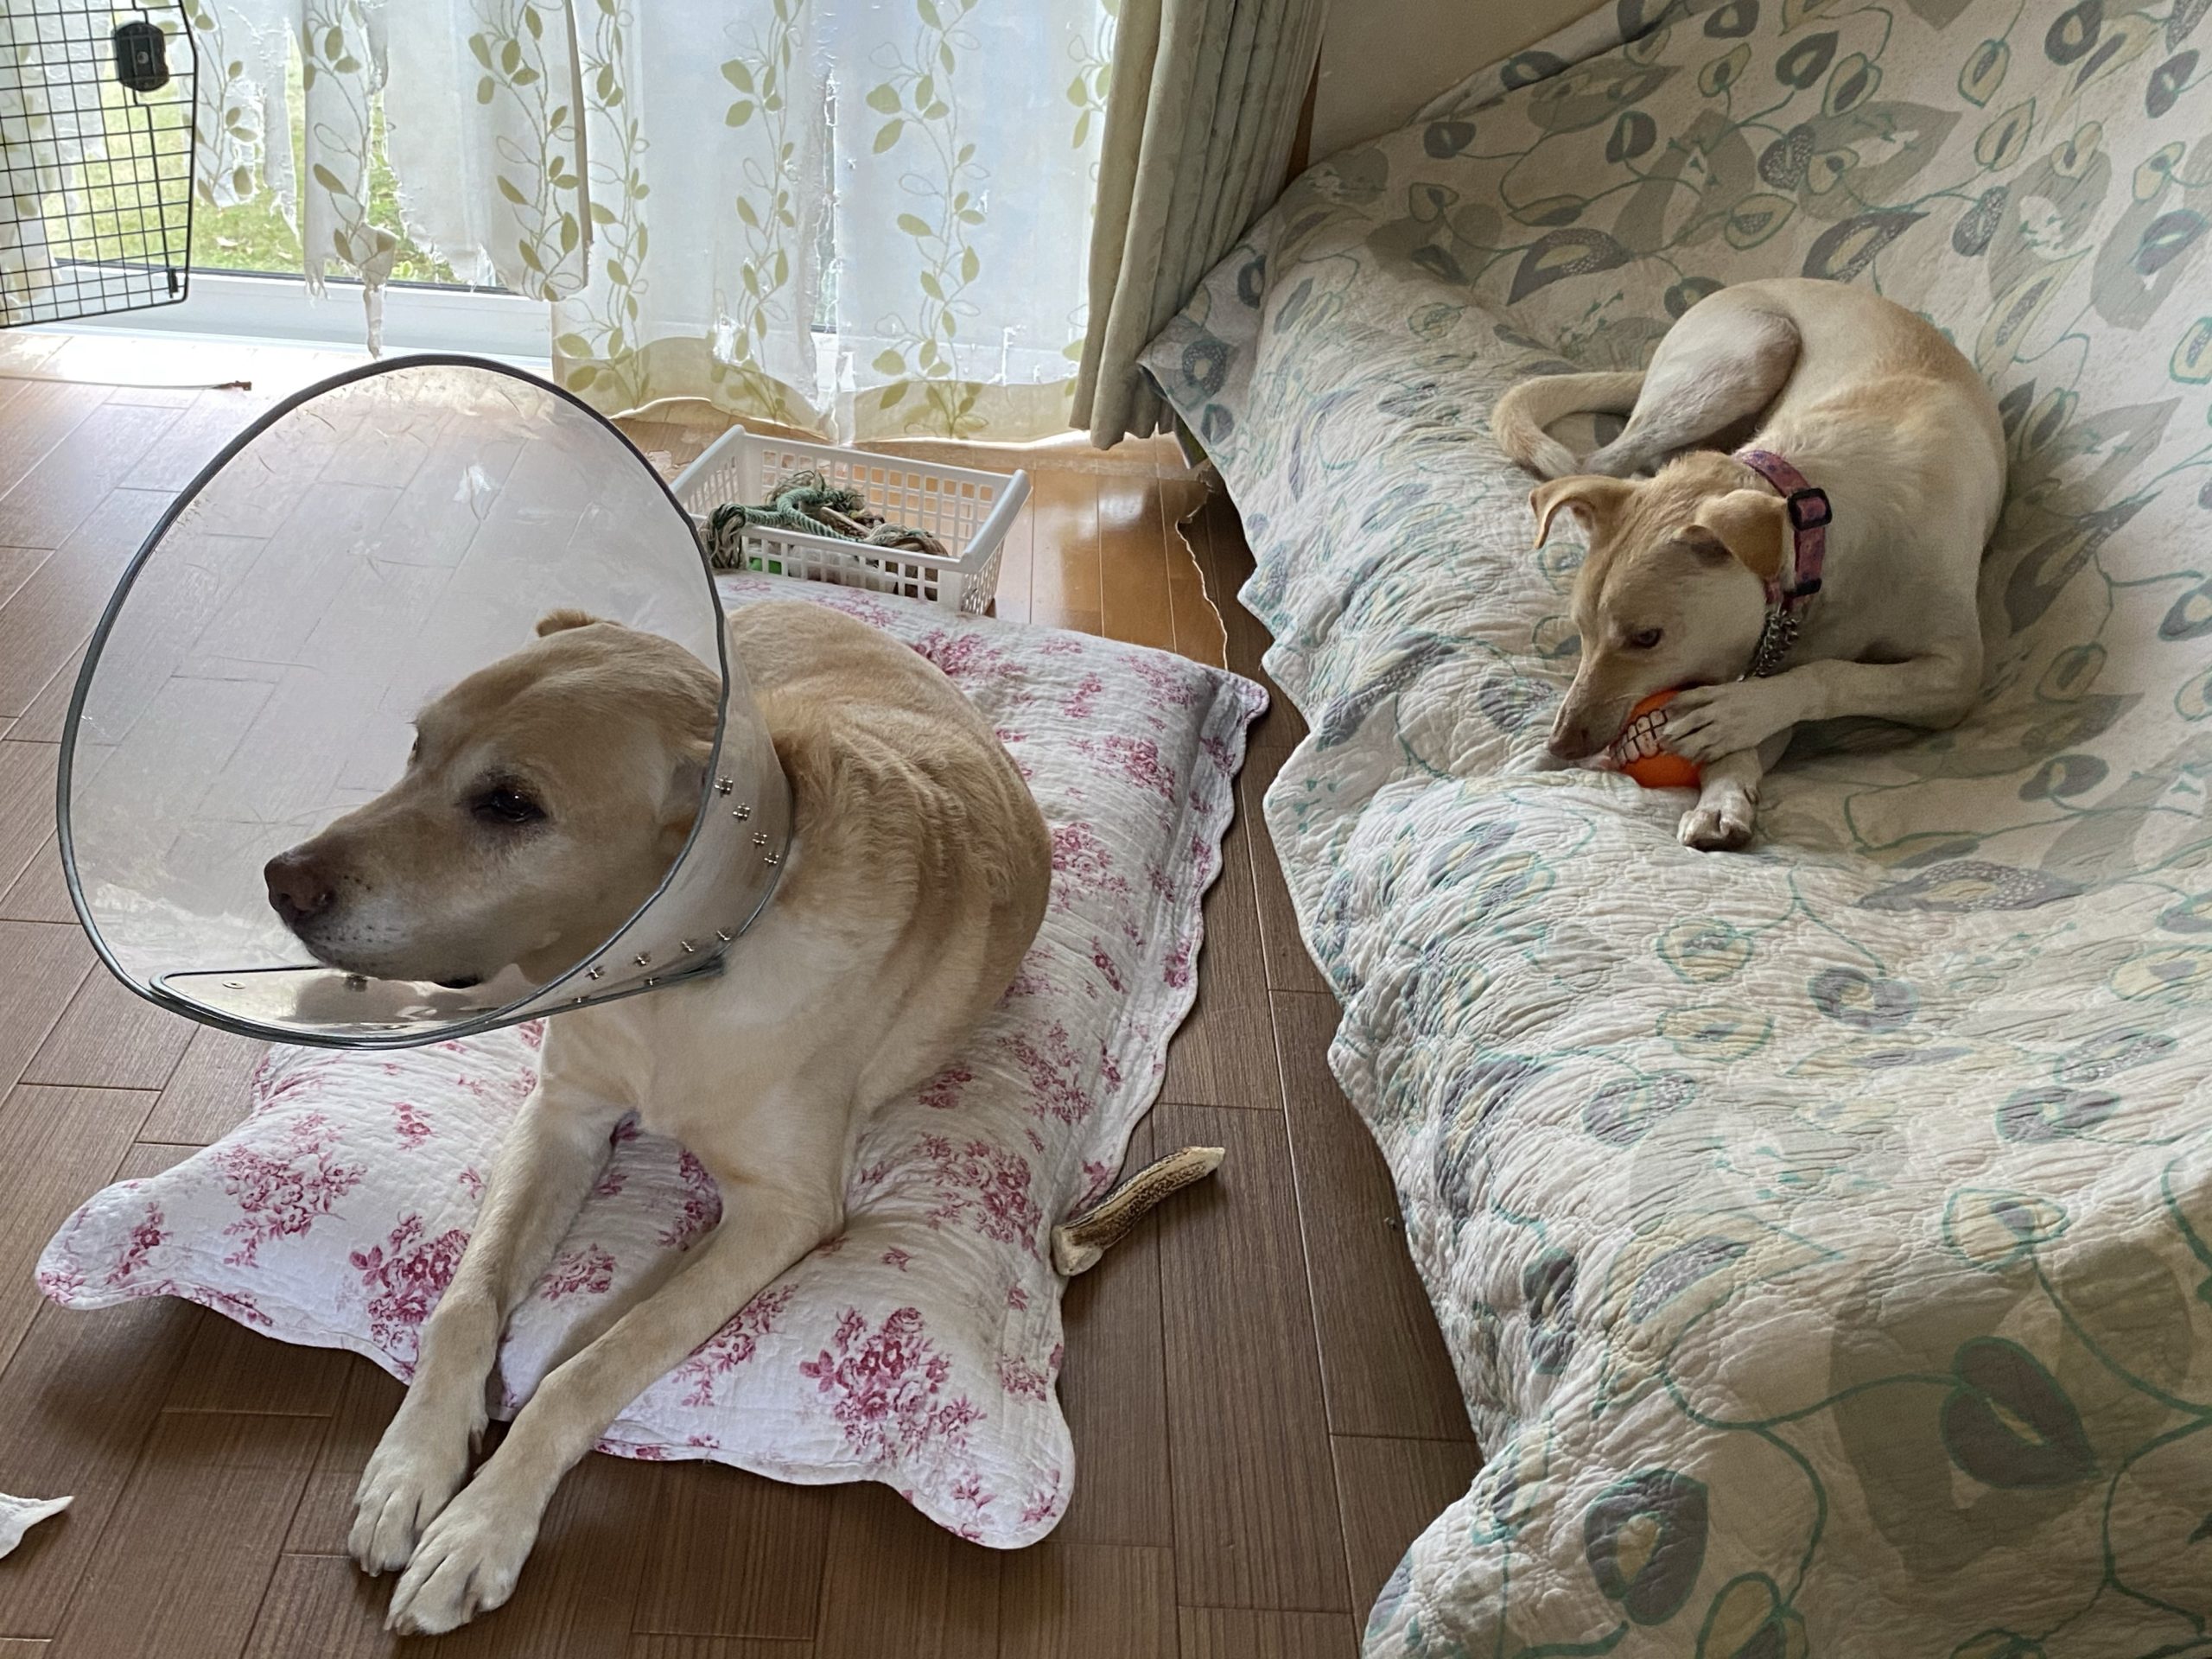 破壊されるのが嫌なら 犬は飼わない方がいい チャコまま 茨城 犬の里親探し 保護犬活動の個人ボランティア